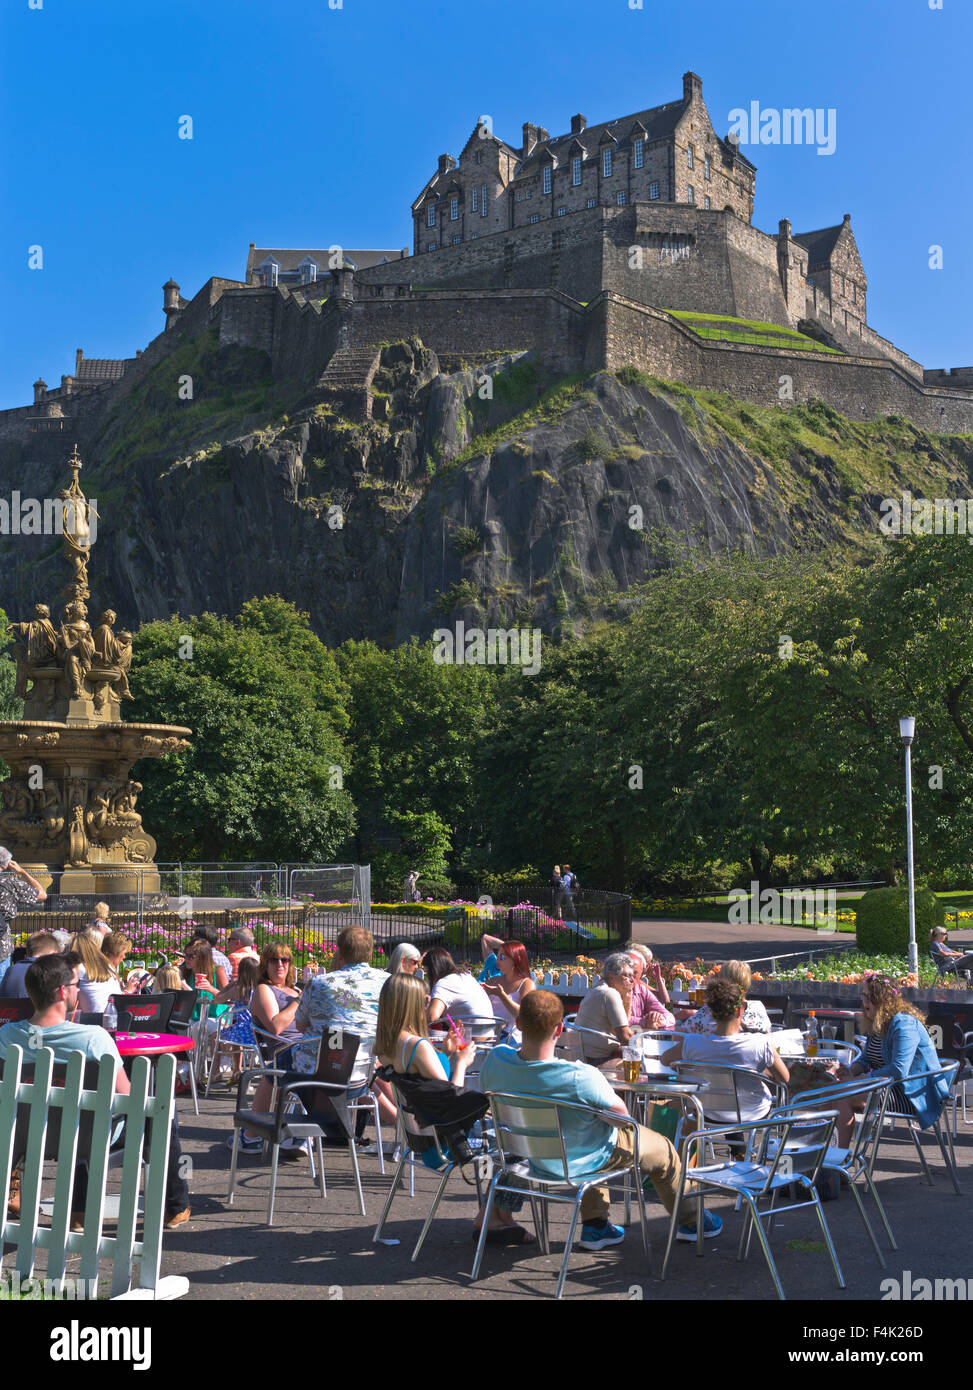 dh PRINCES ST JARDINS EDIMBOURG personnes détente café d'été Sunshine Castle ecosse sièges extérieur jour touristique ville attraction Royaume-Uni Banque D'Images